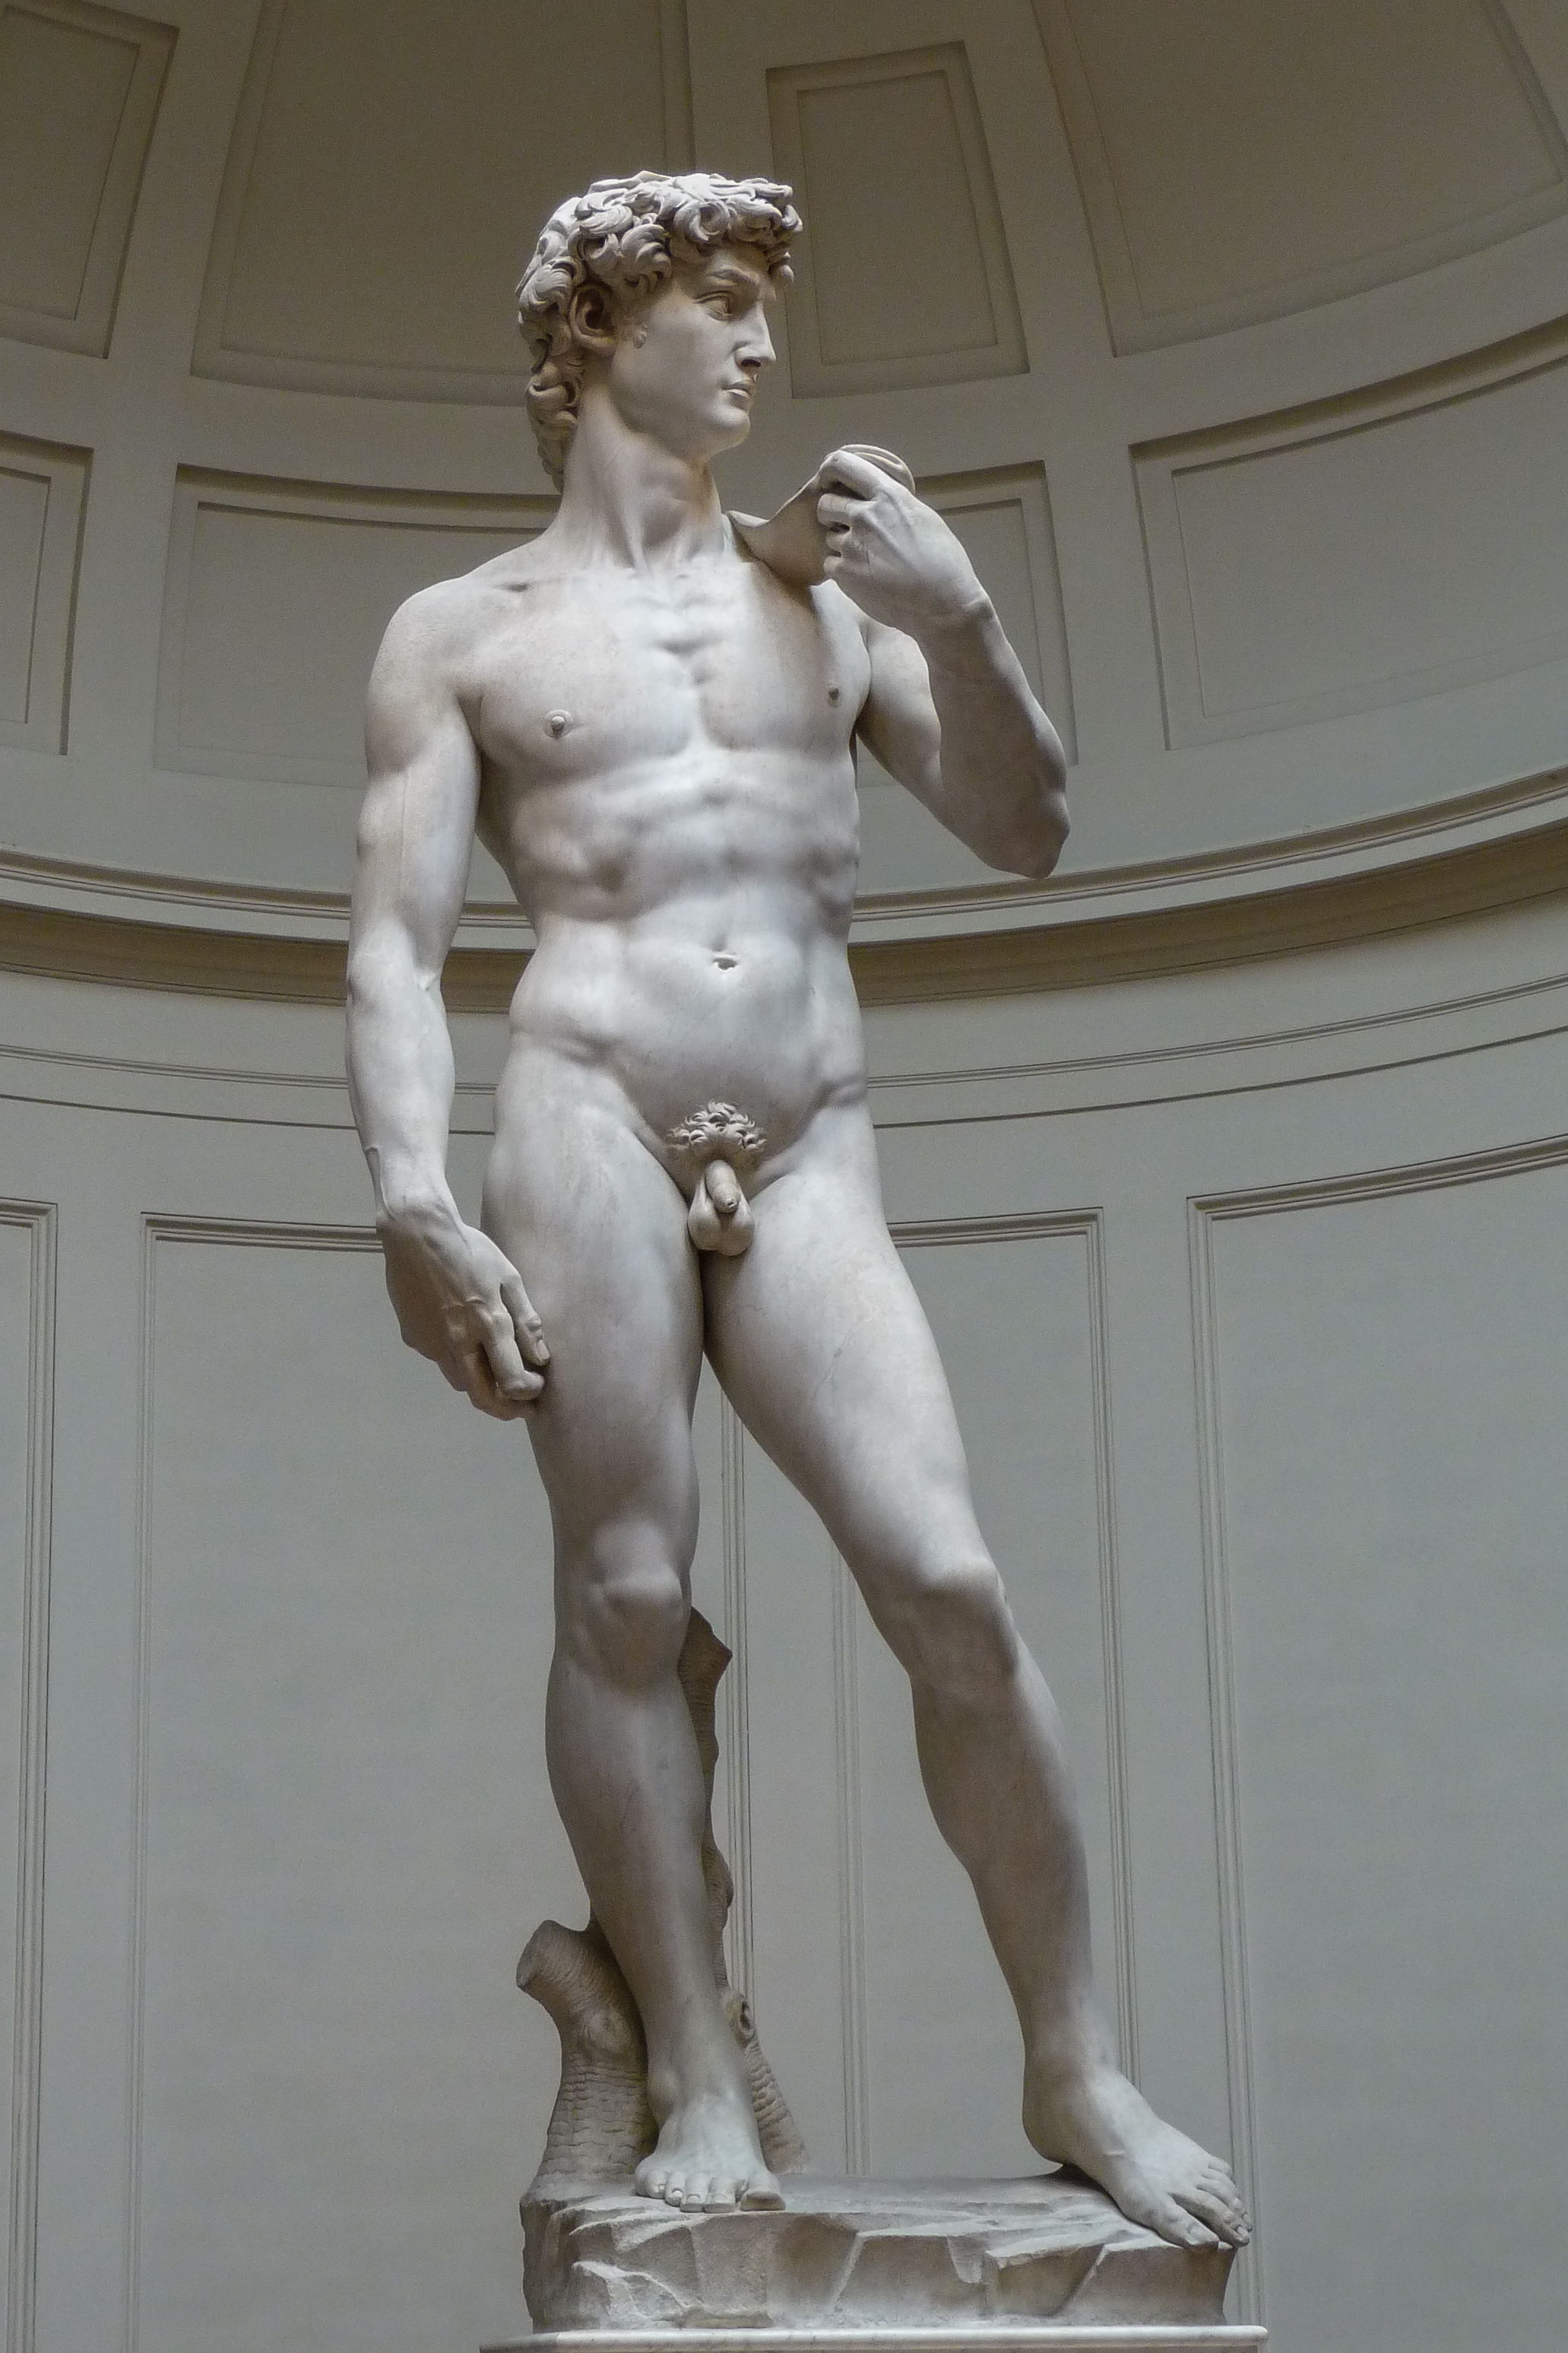 Dawid by  Michelangelo - 1501-1504 - 5.17 m 